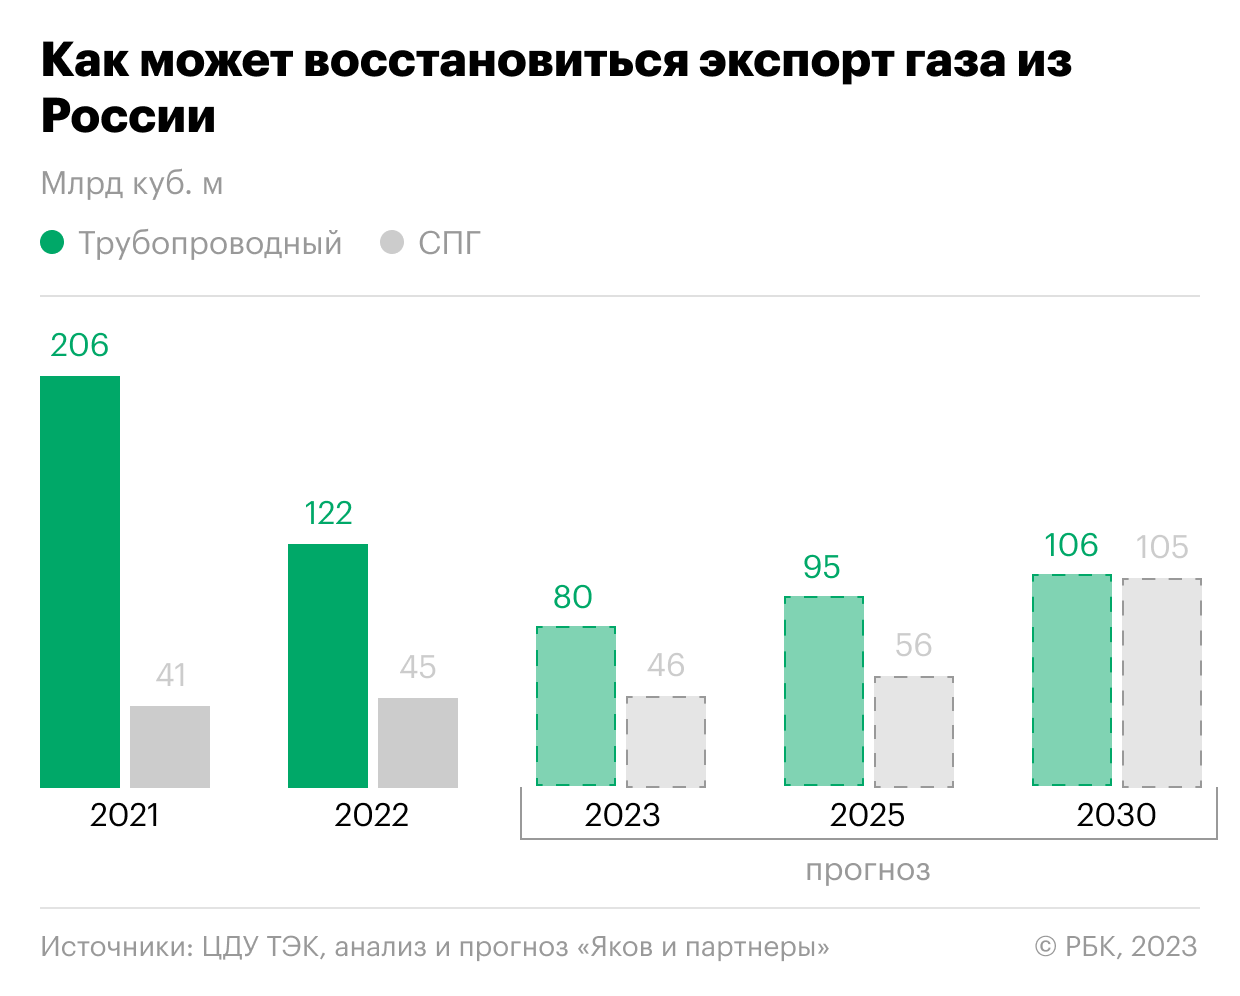 Экспорт трубопроводного газа из России в 2023 году снизится в 1,5 раза